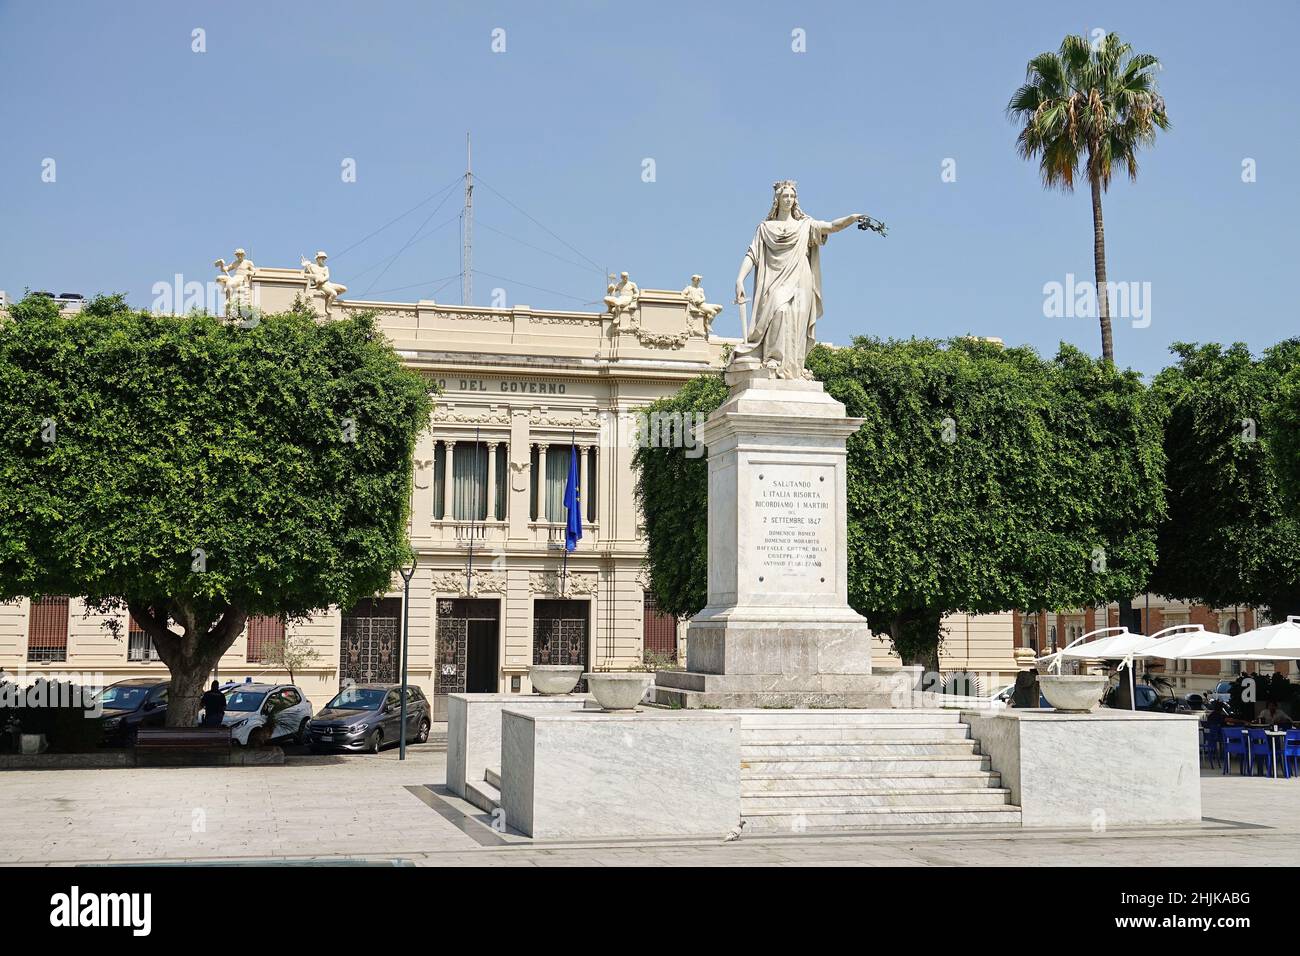 Zone archéologique place Ipogea Piazza Italia, bâtiment de la préfecture et palmiers verts dans le centre historique, Reggio Calabria, Italie - juillet 2021 Banque D'Images